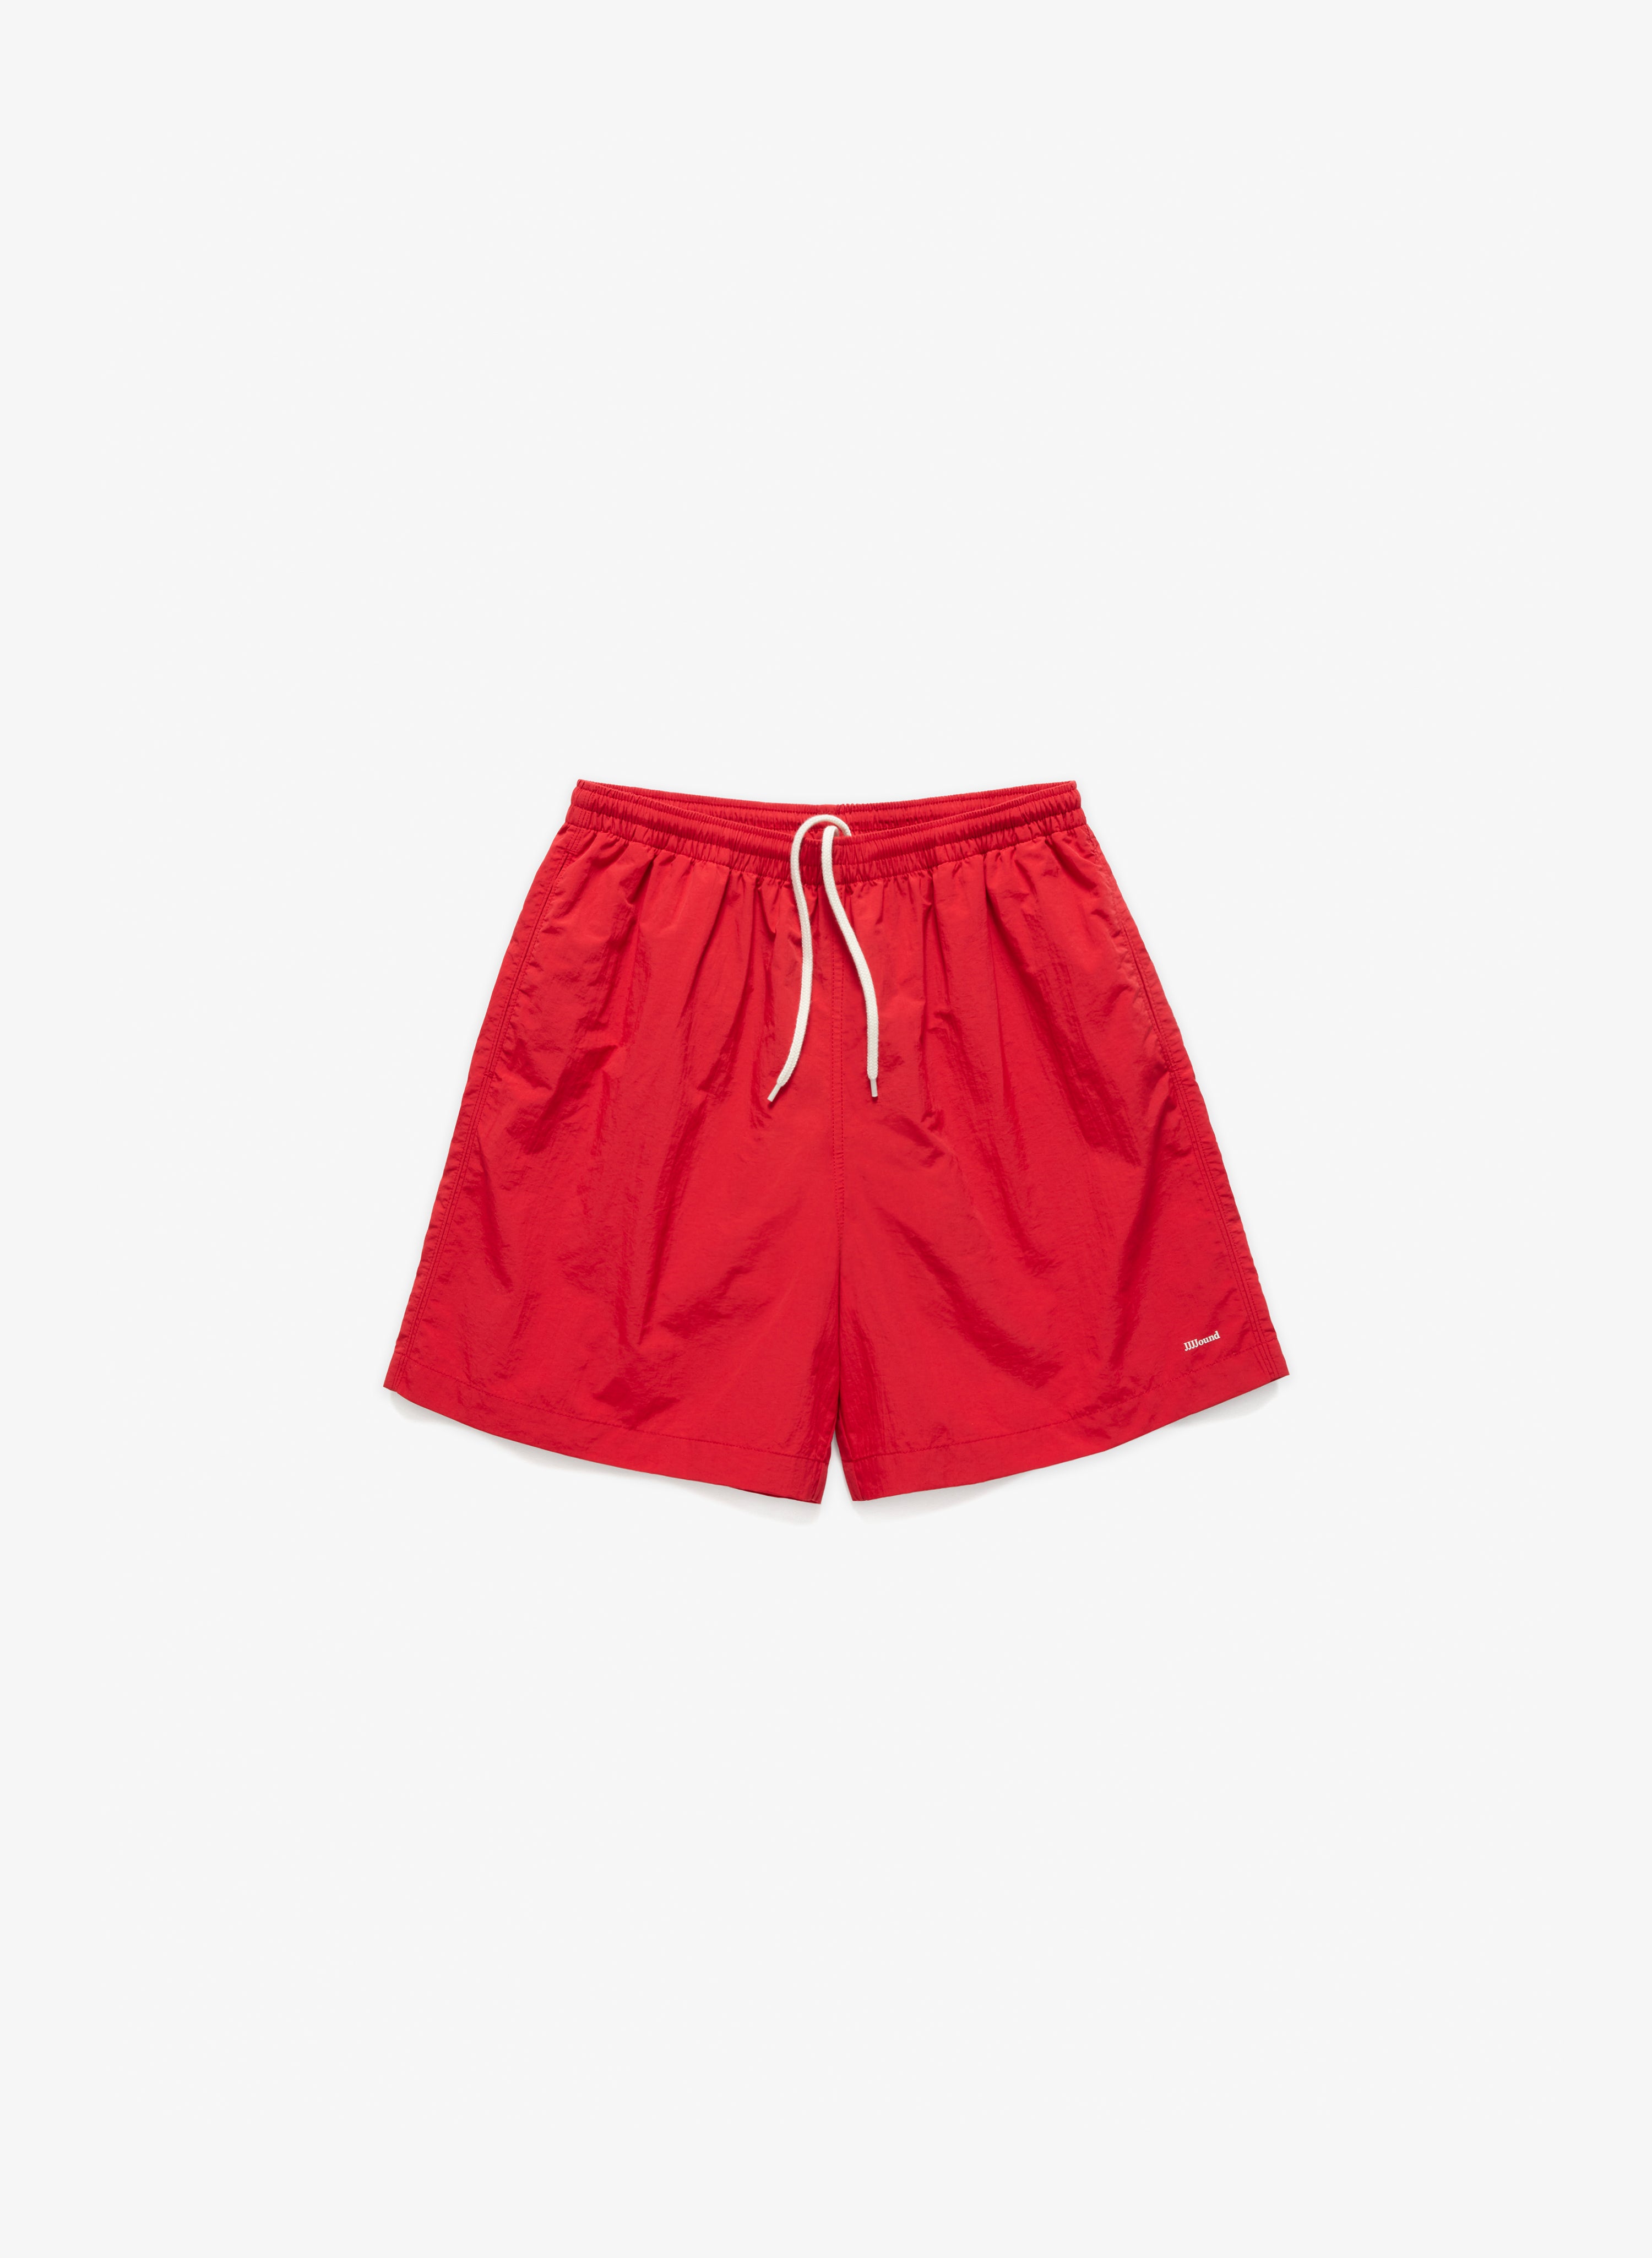 Camper Shorts - Red – JJJJound